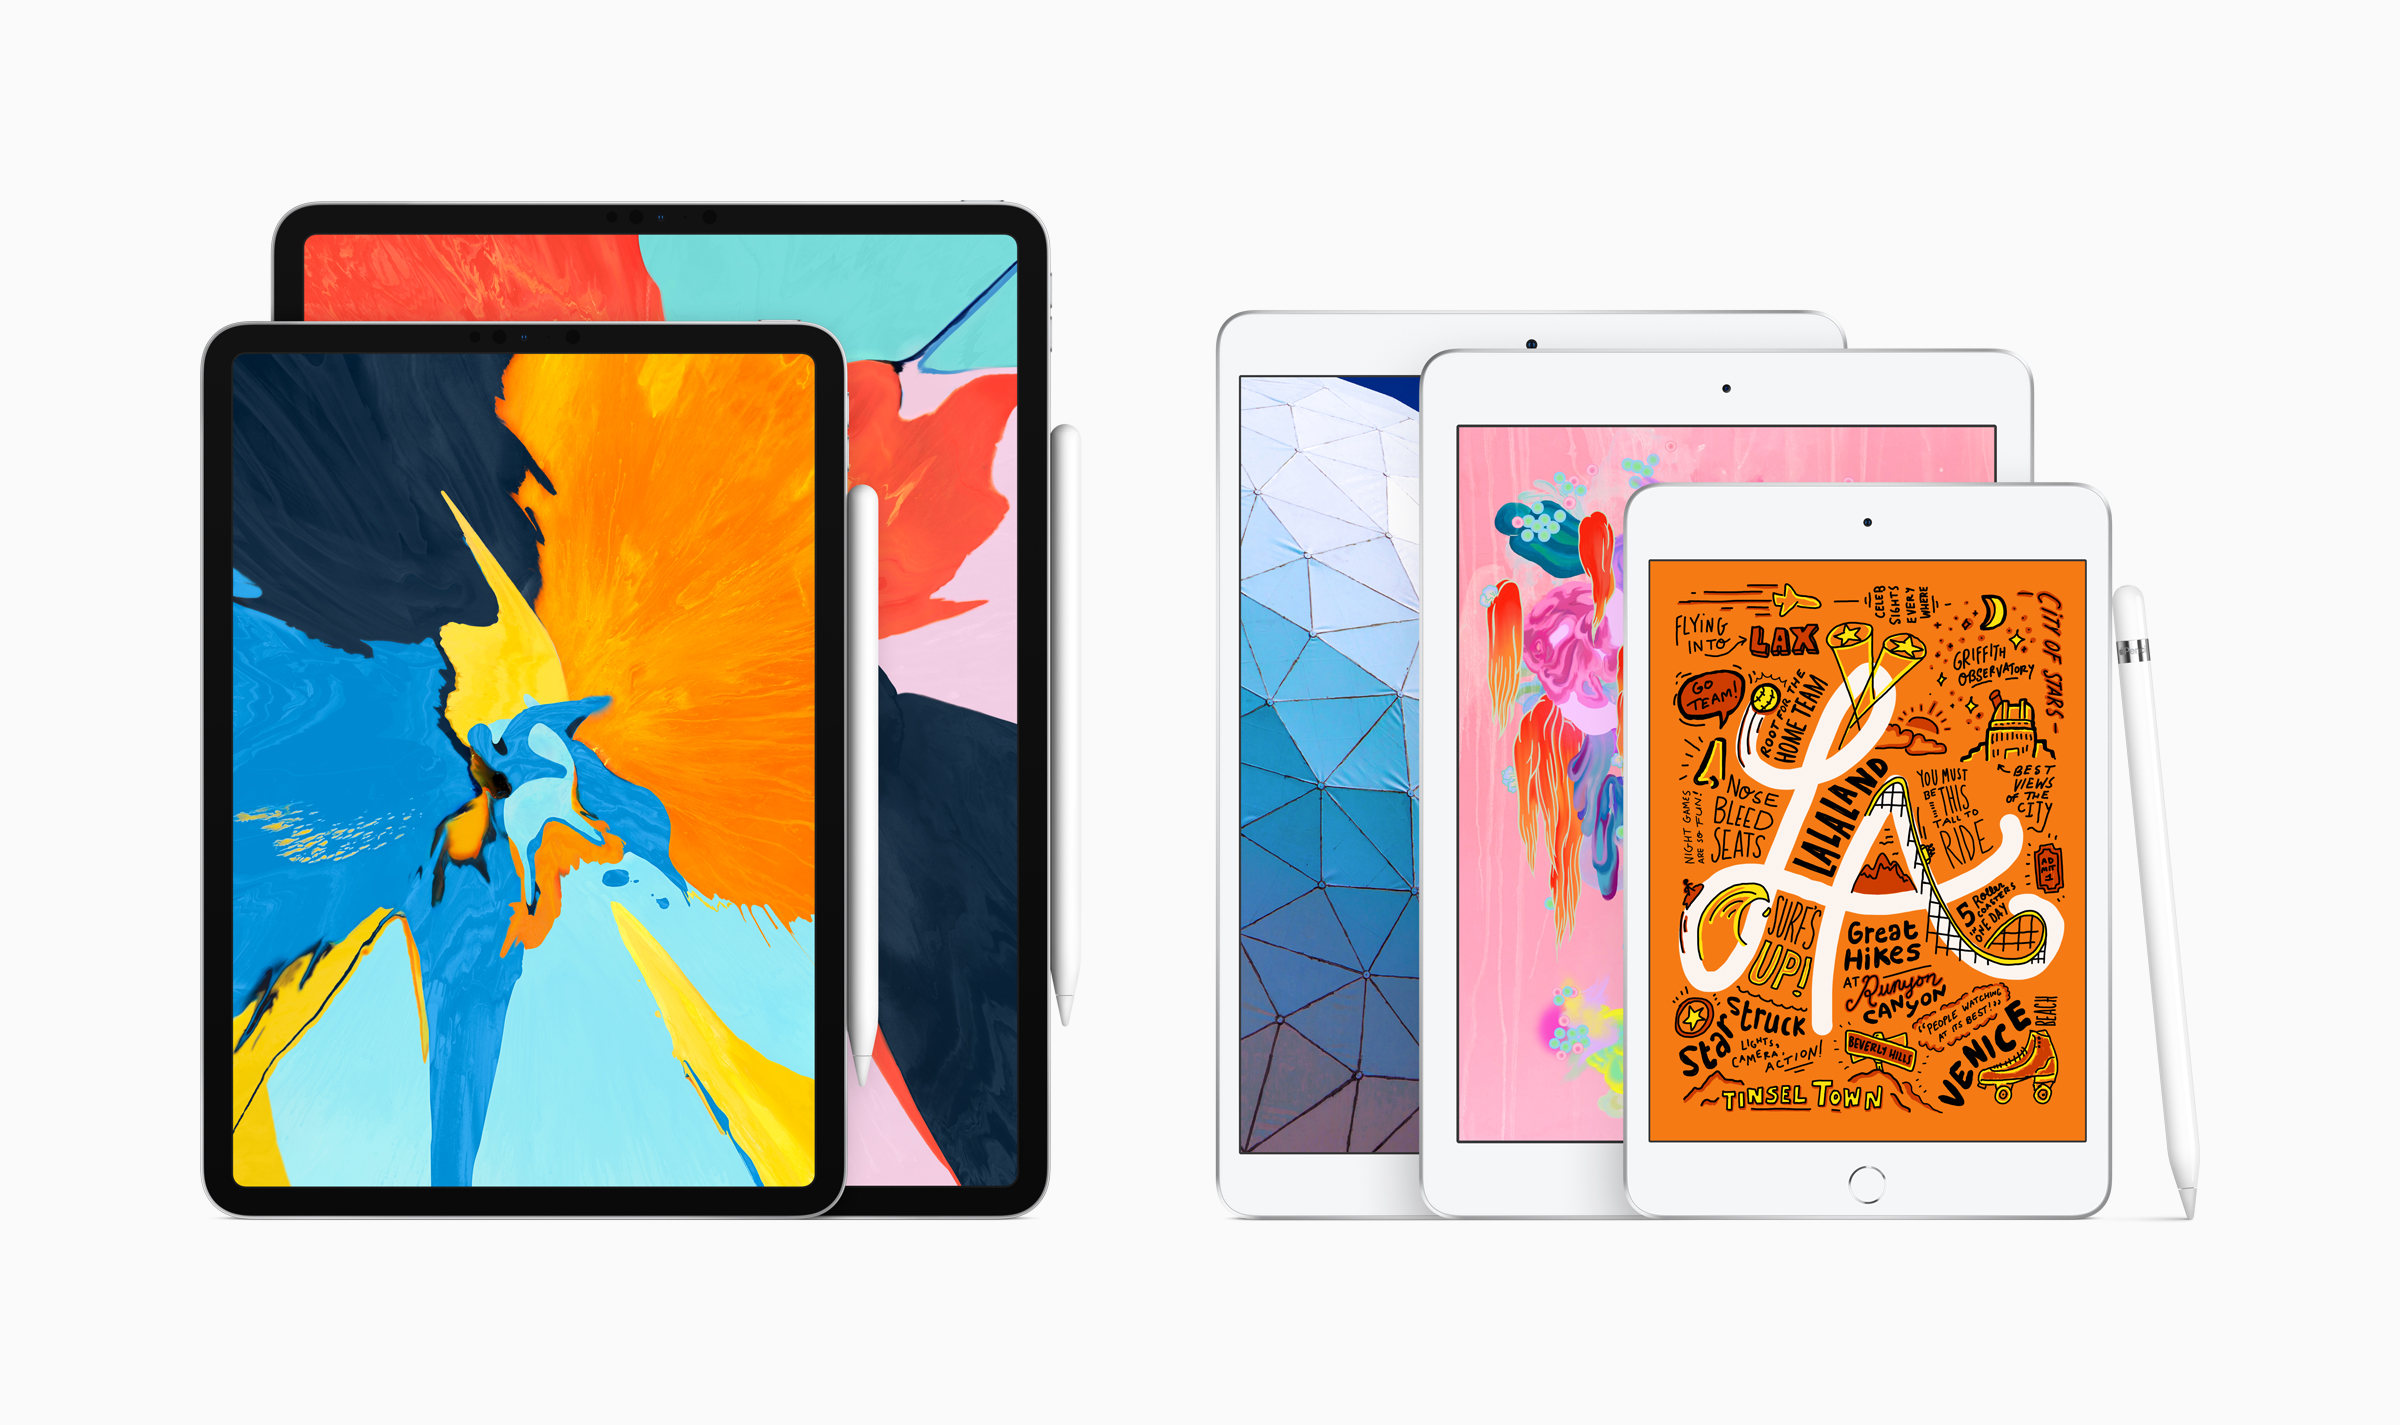 iPad Air 2019, màn hình 10.5-inch, hỗ trợ Apple Pencil và Smart Keyboard, chung cấu hình iPhone XS Max